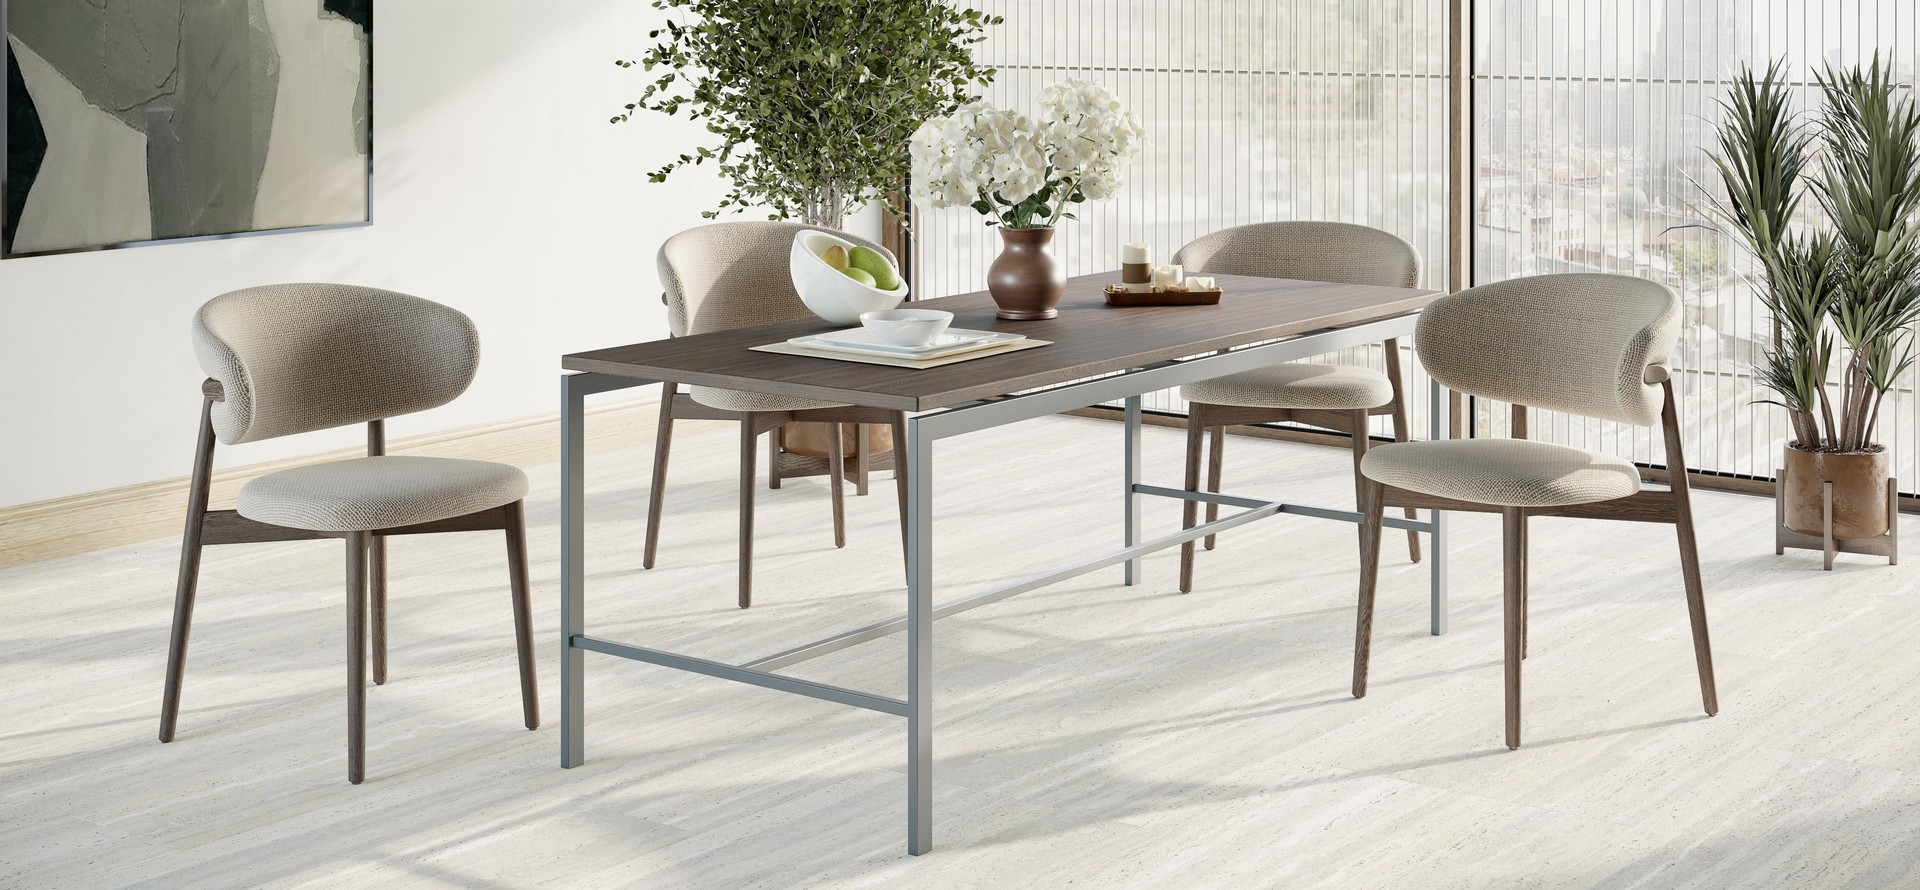 Tables & Desks Header Image